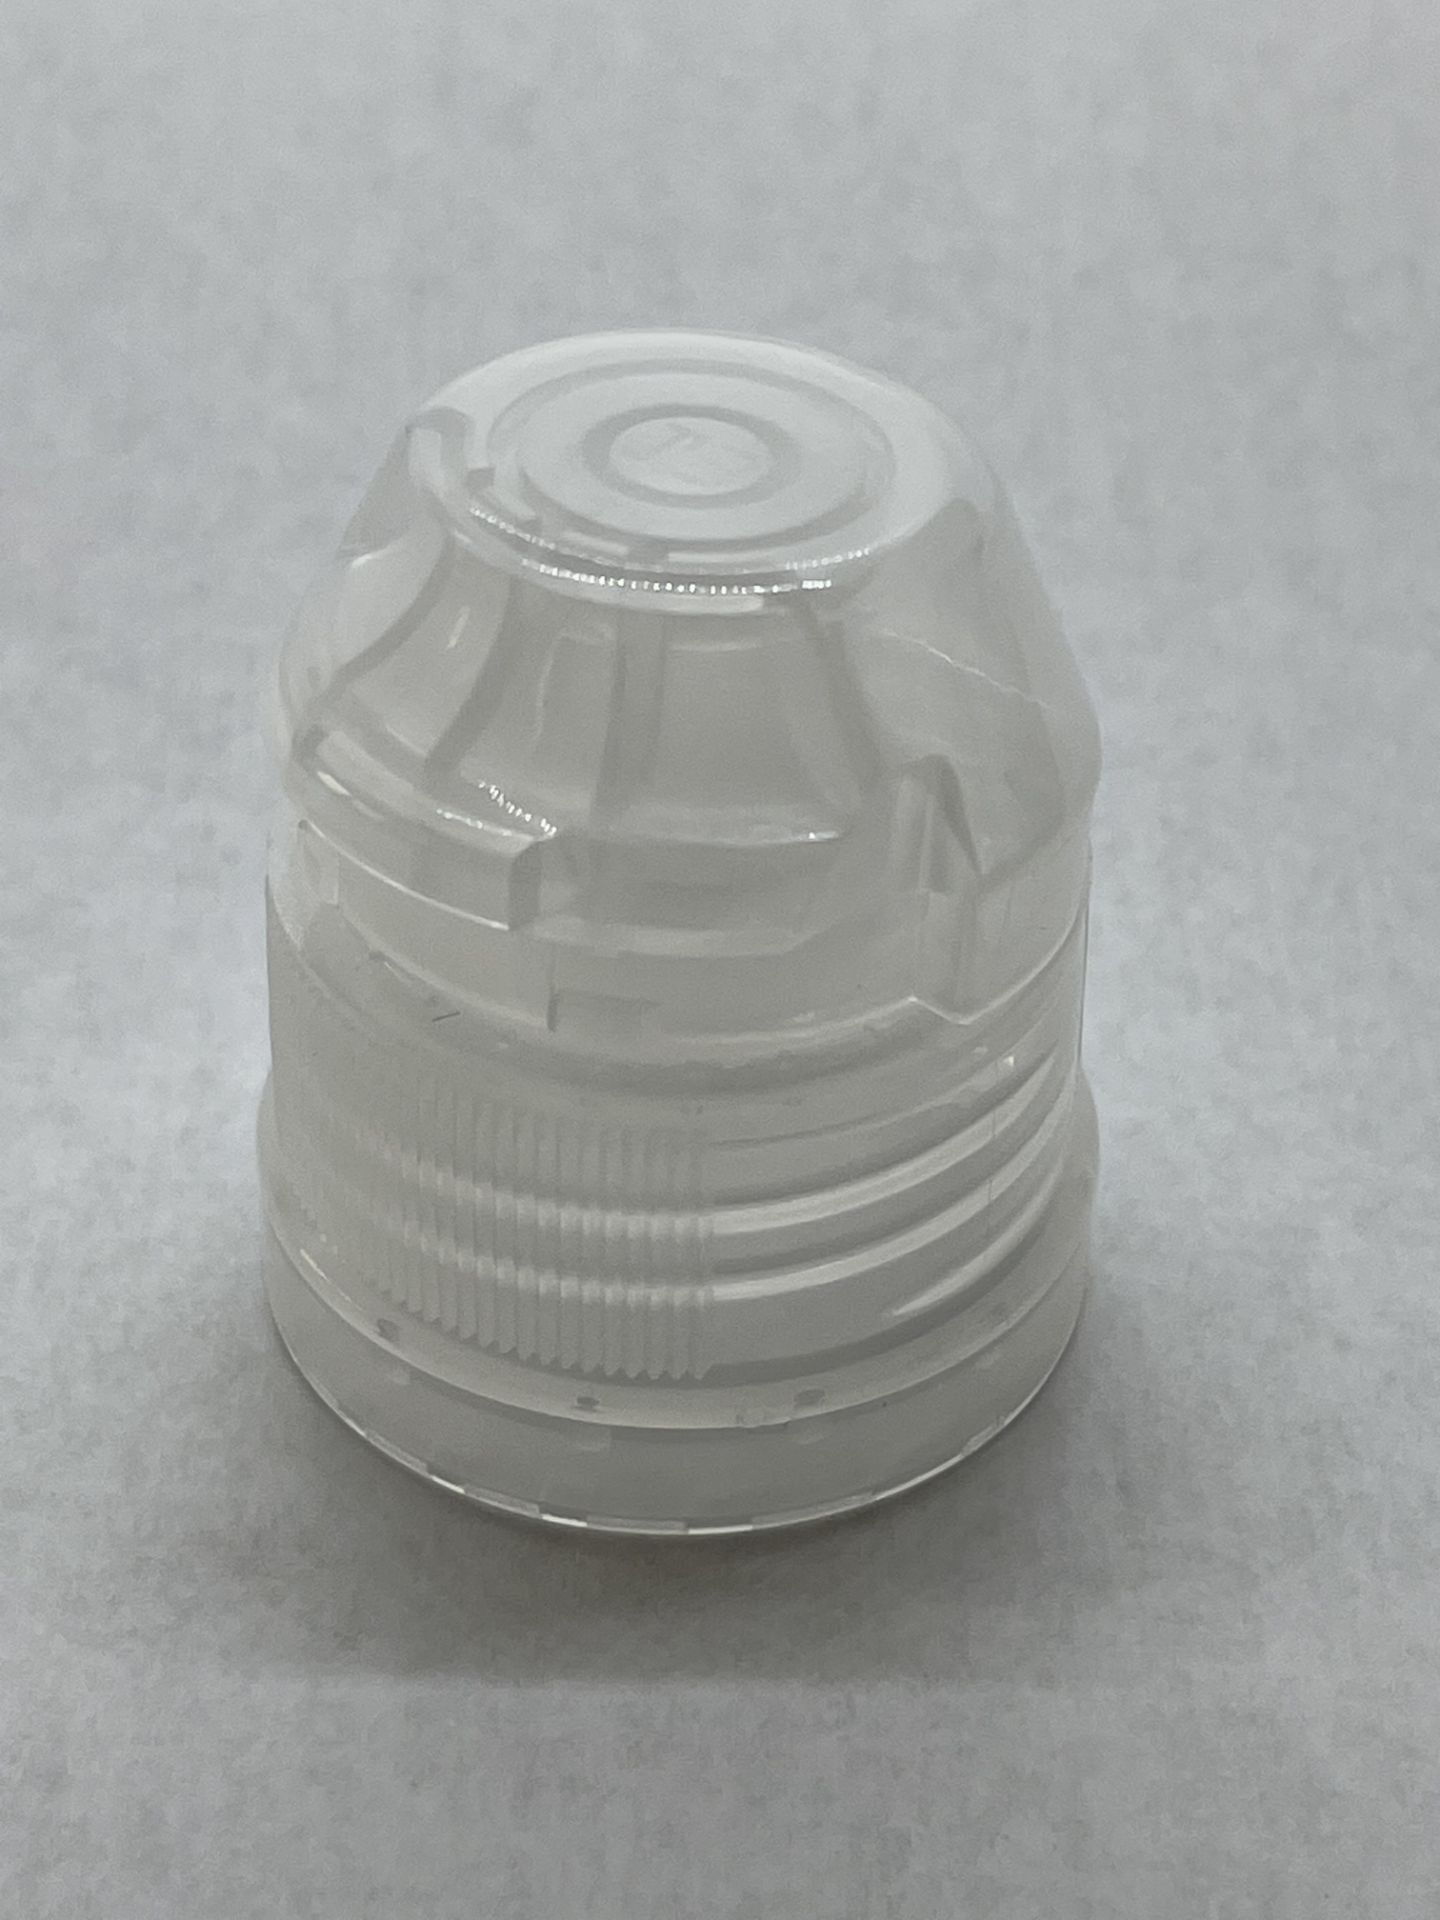 170,000 - Popular Aptar Water bottle sport cap for 16 oz bottle, 28-410 Threading - Image 5 of 6